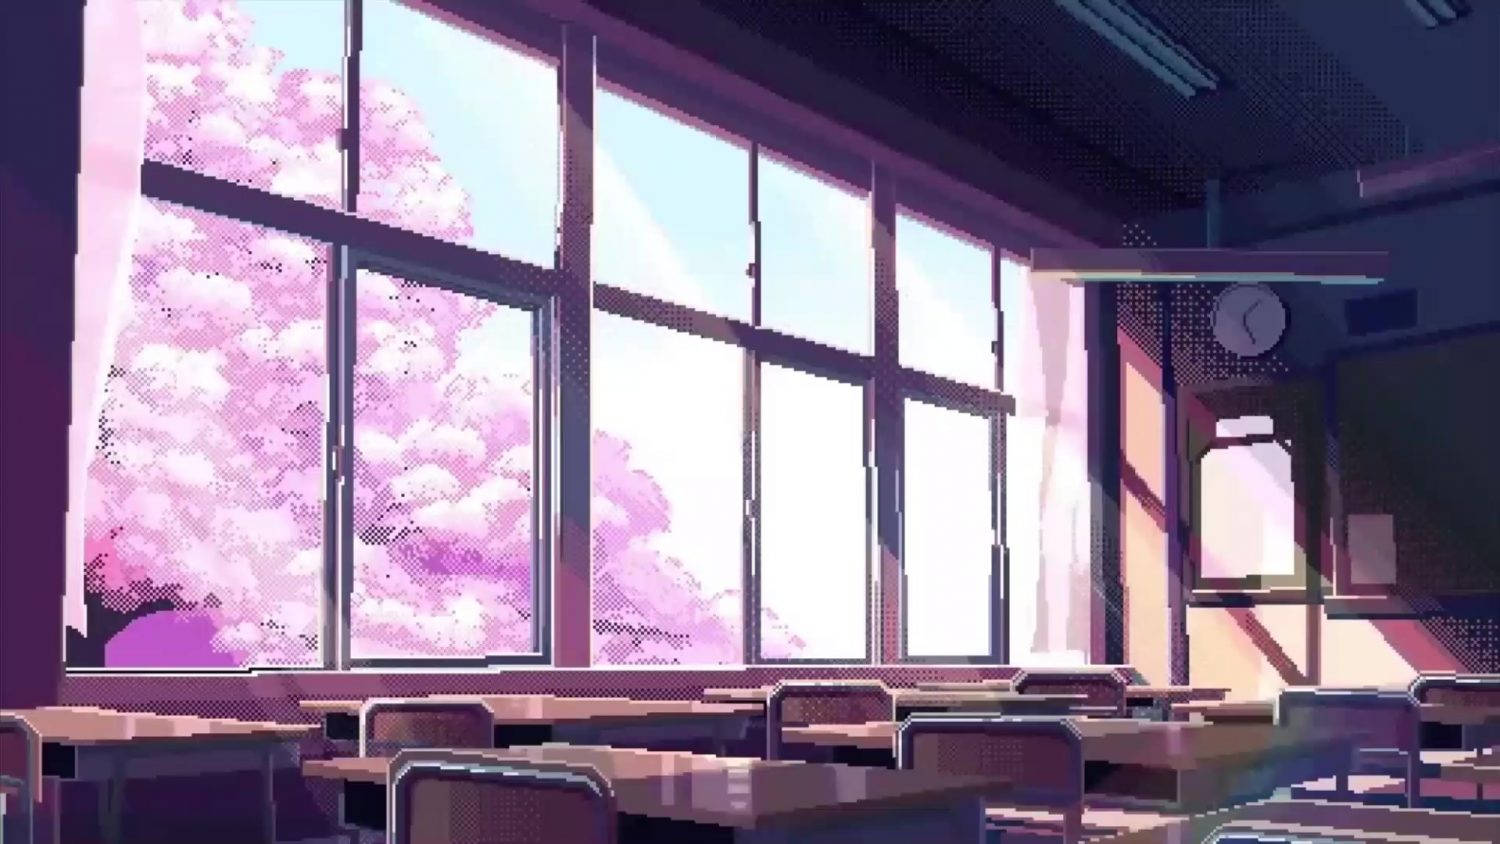 Kirschblütenund Anime-klassenzimmer Wallpaper